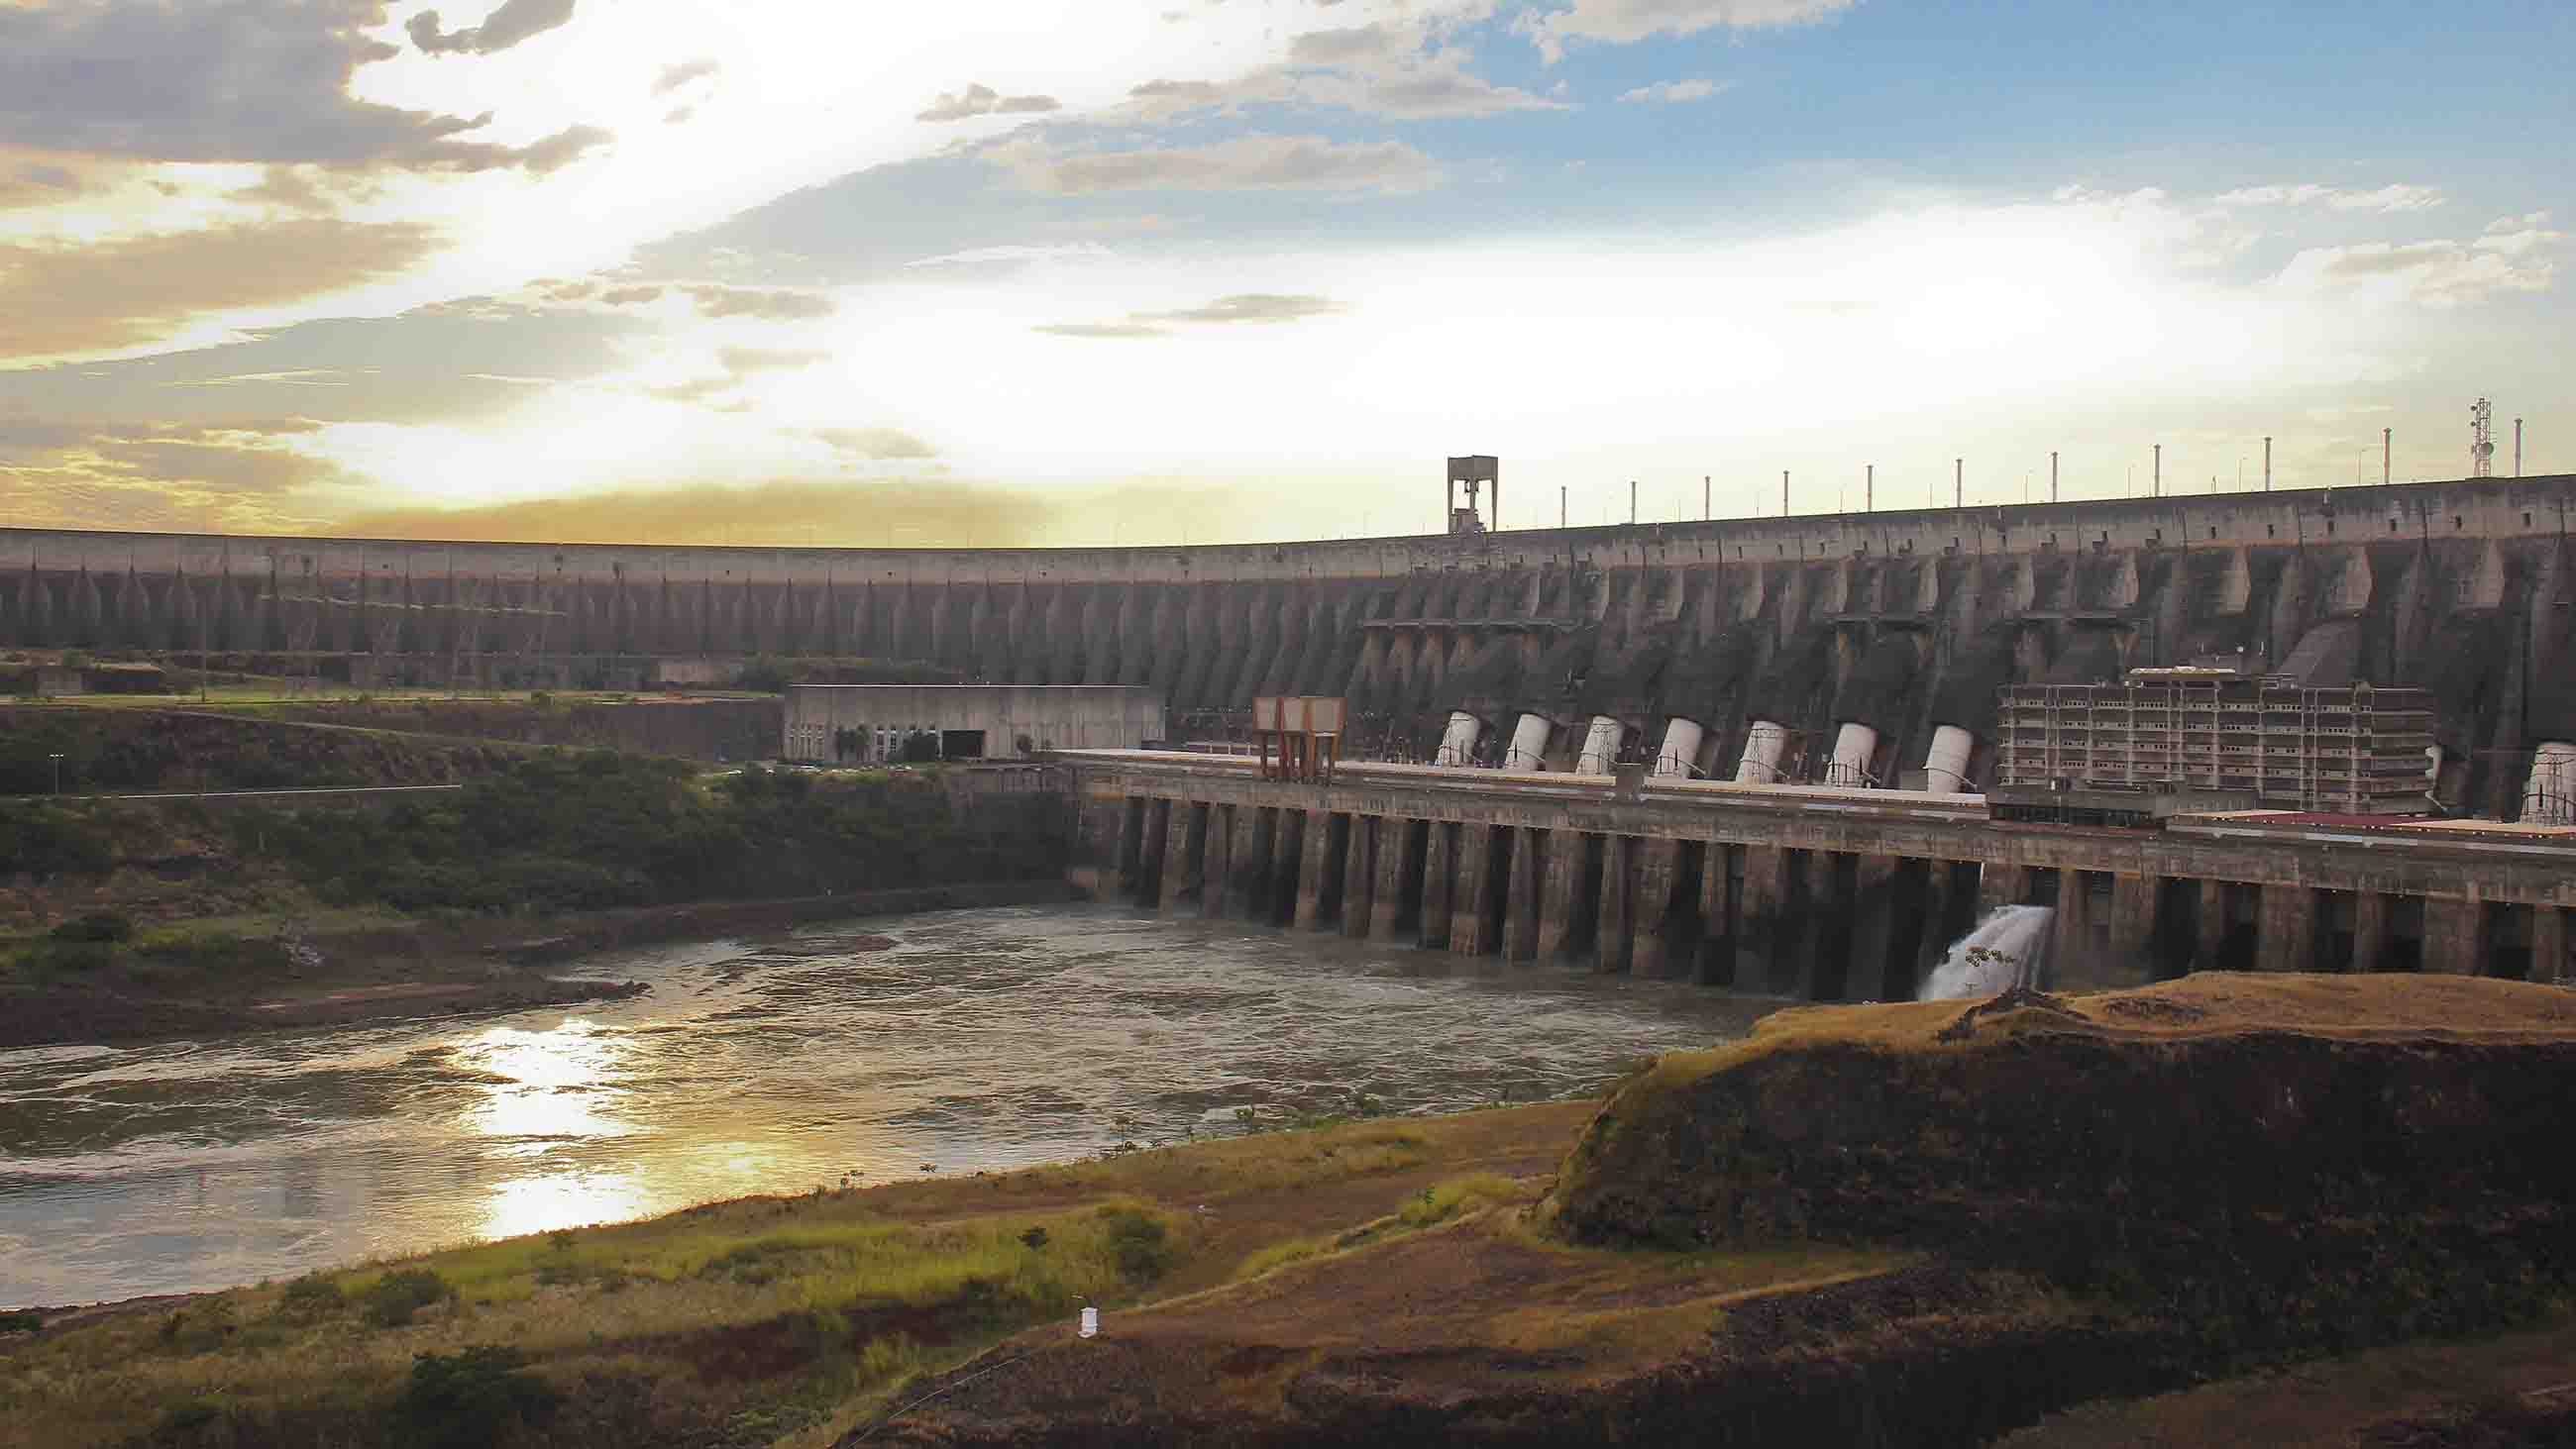 Люди перегородили реку большой плотиной вода. Плотина Итайпу в Бразилии. Плотина Итайпу в Парагвай. Плотина гидроэлектростанции Итайпу. ГЭС «Итайпу», Бразилия и Парагвай.